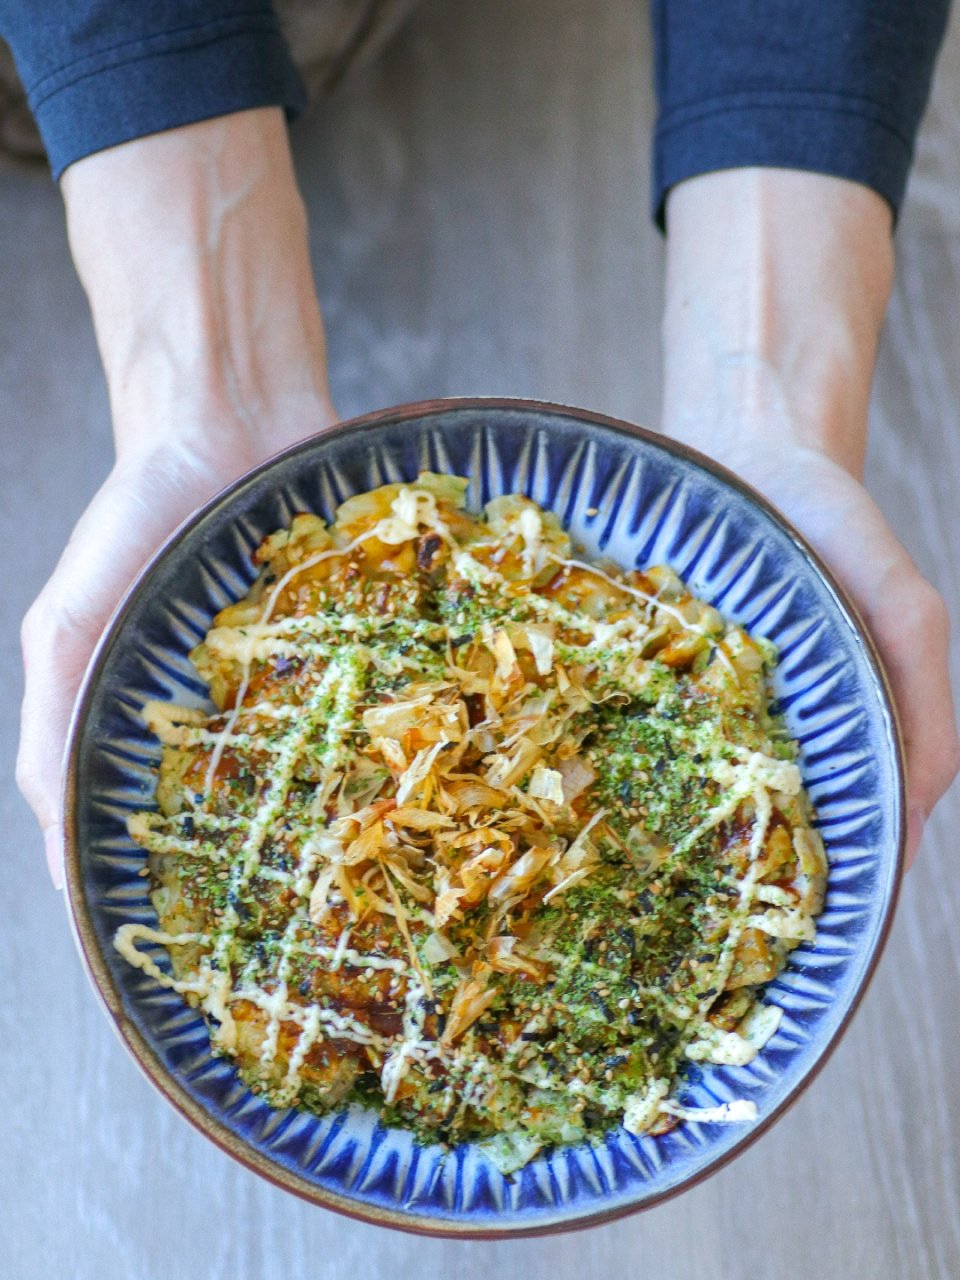 大阪烧 Okonomiyaki...